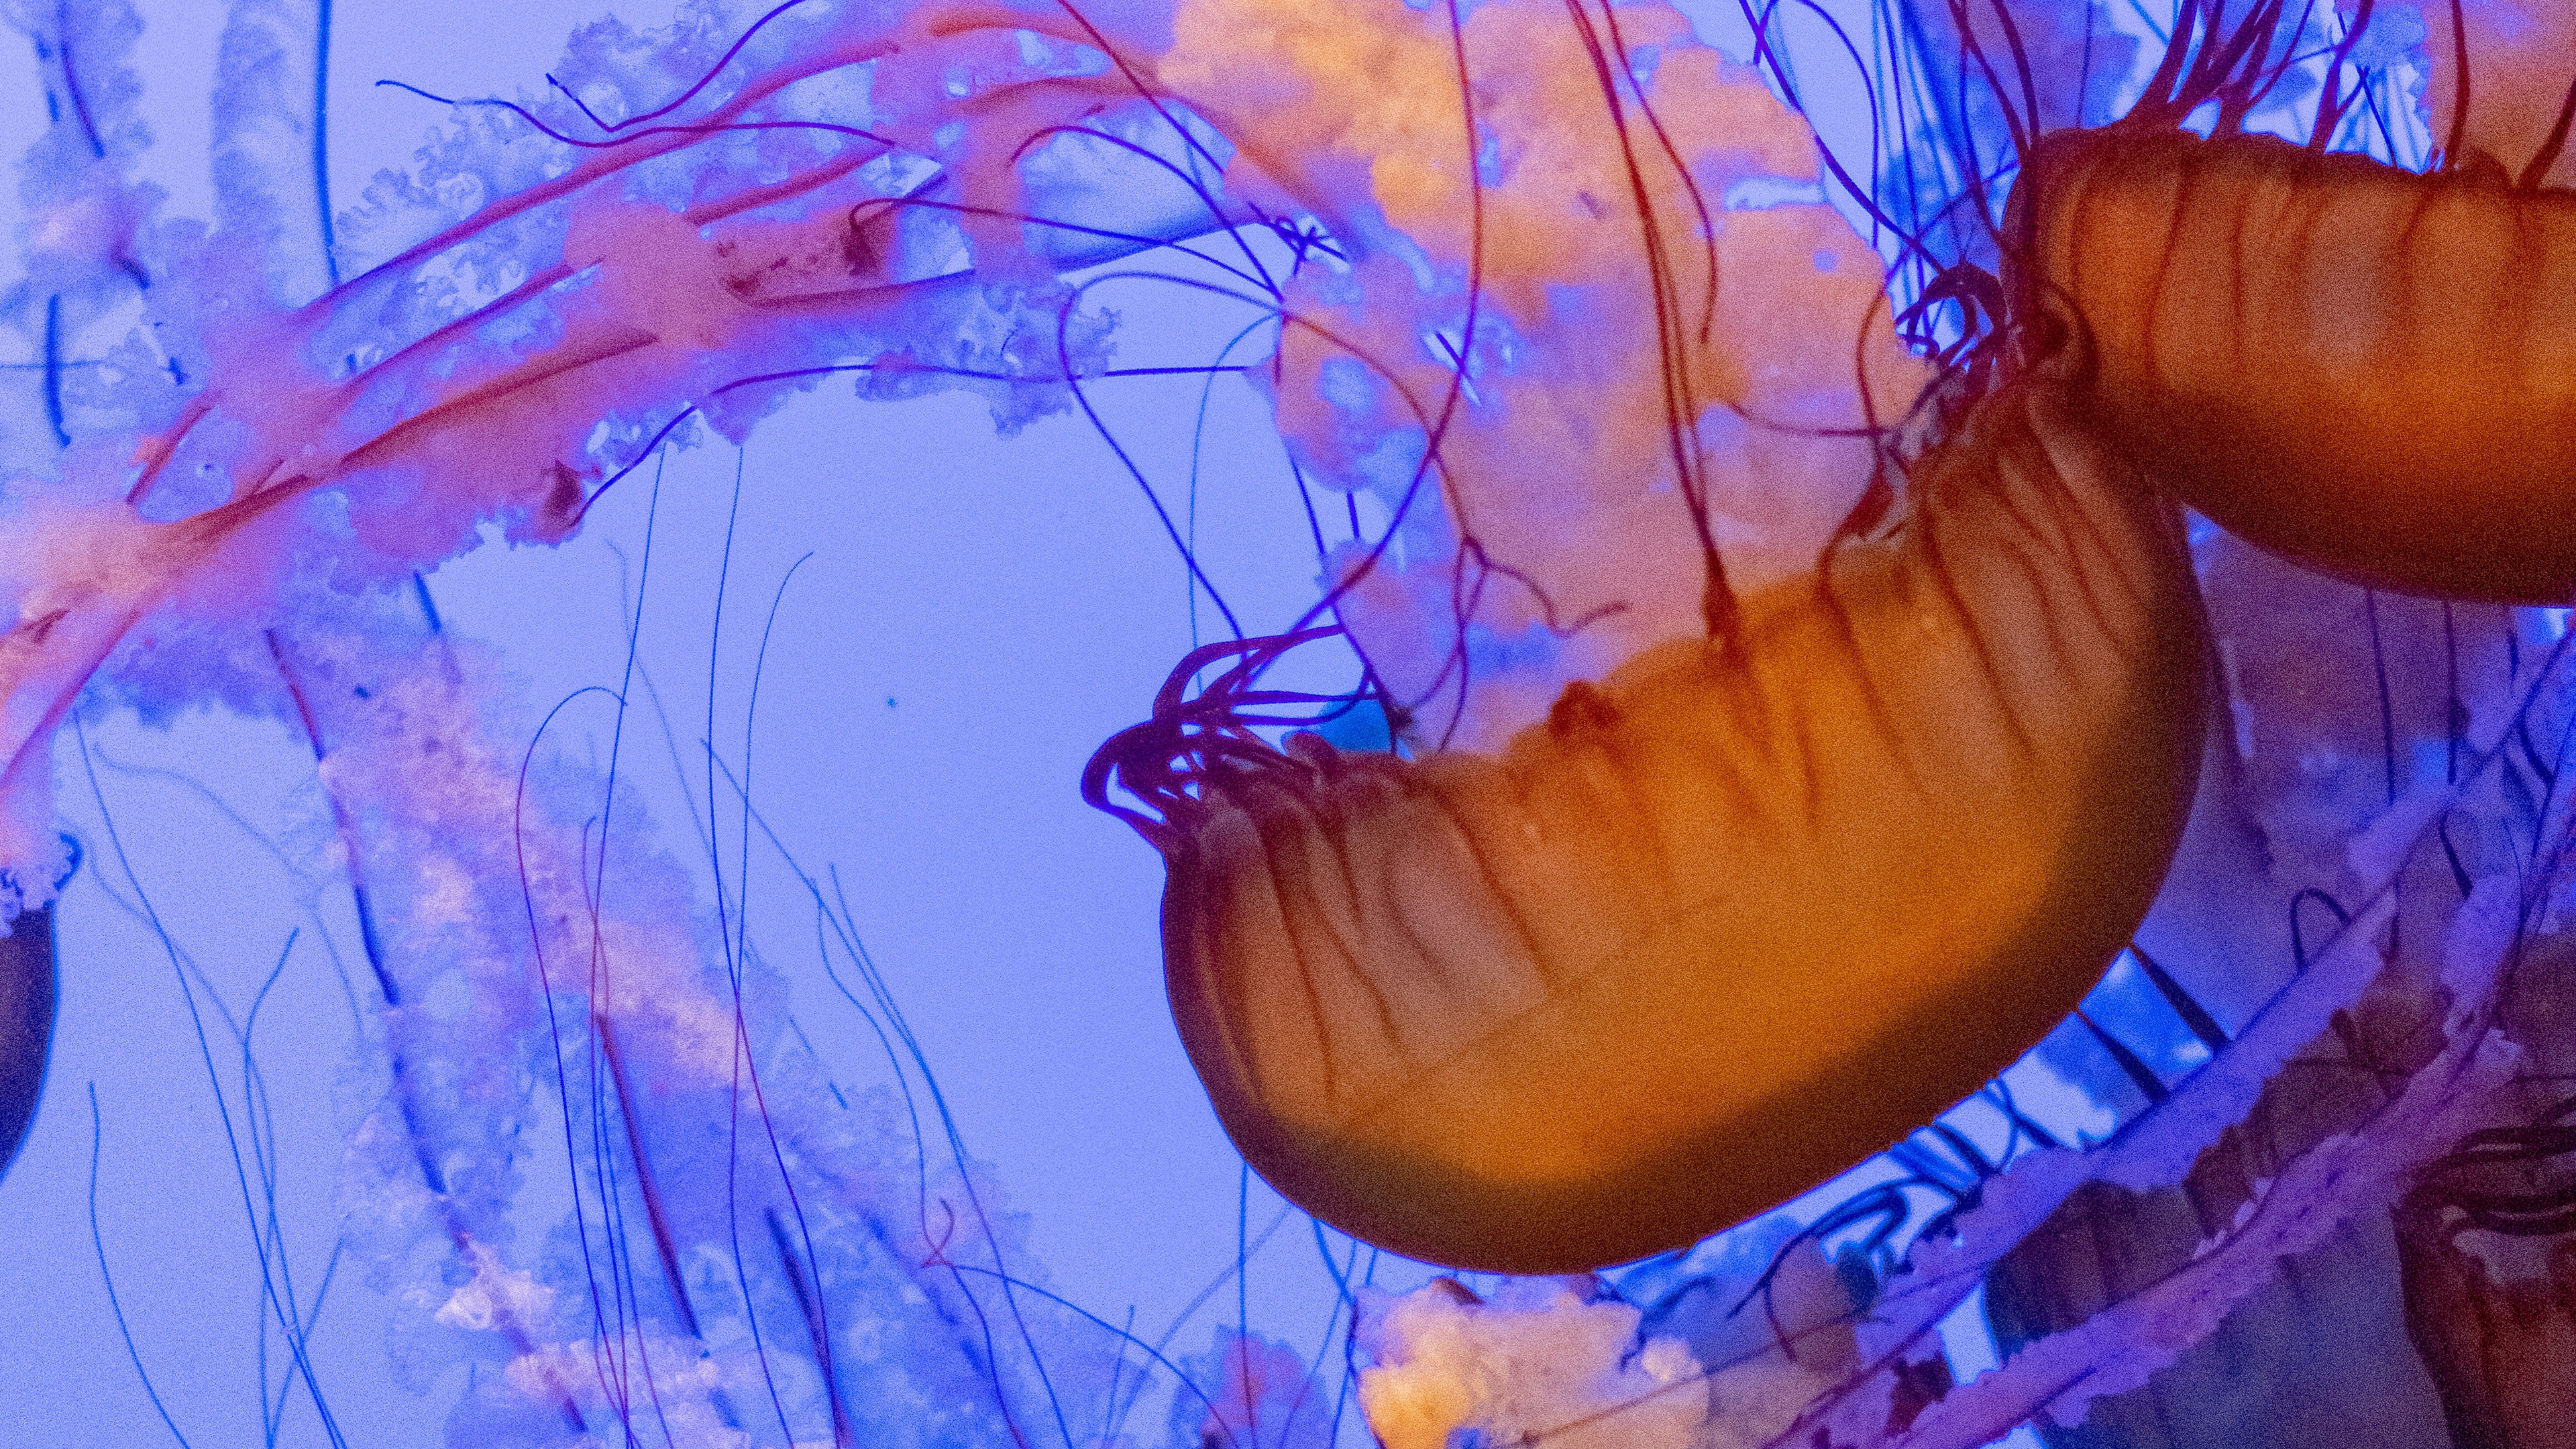 Jellyfish under the sea Wallpaper 4k Ultra HD ID9818